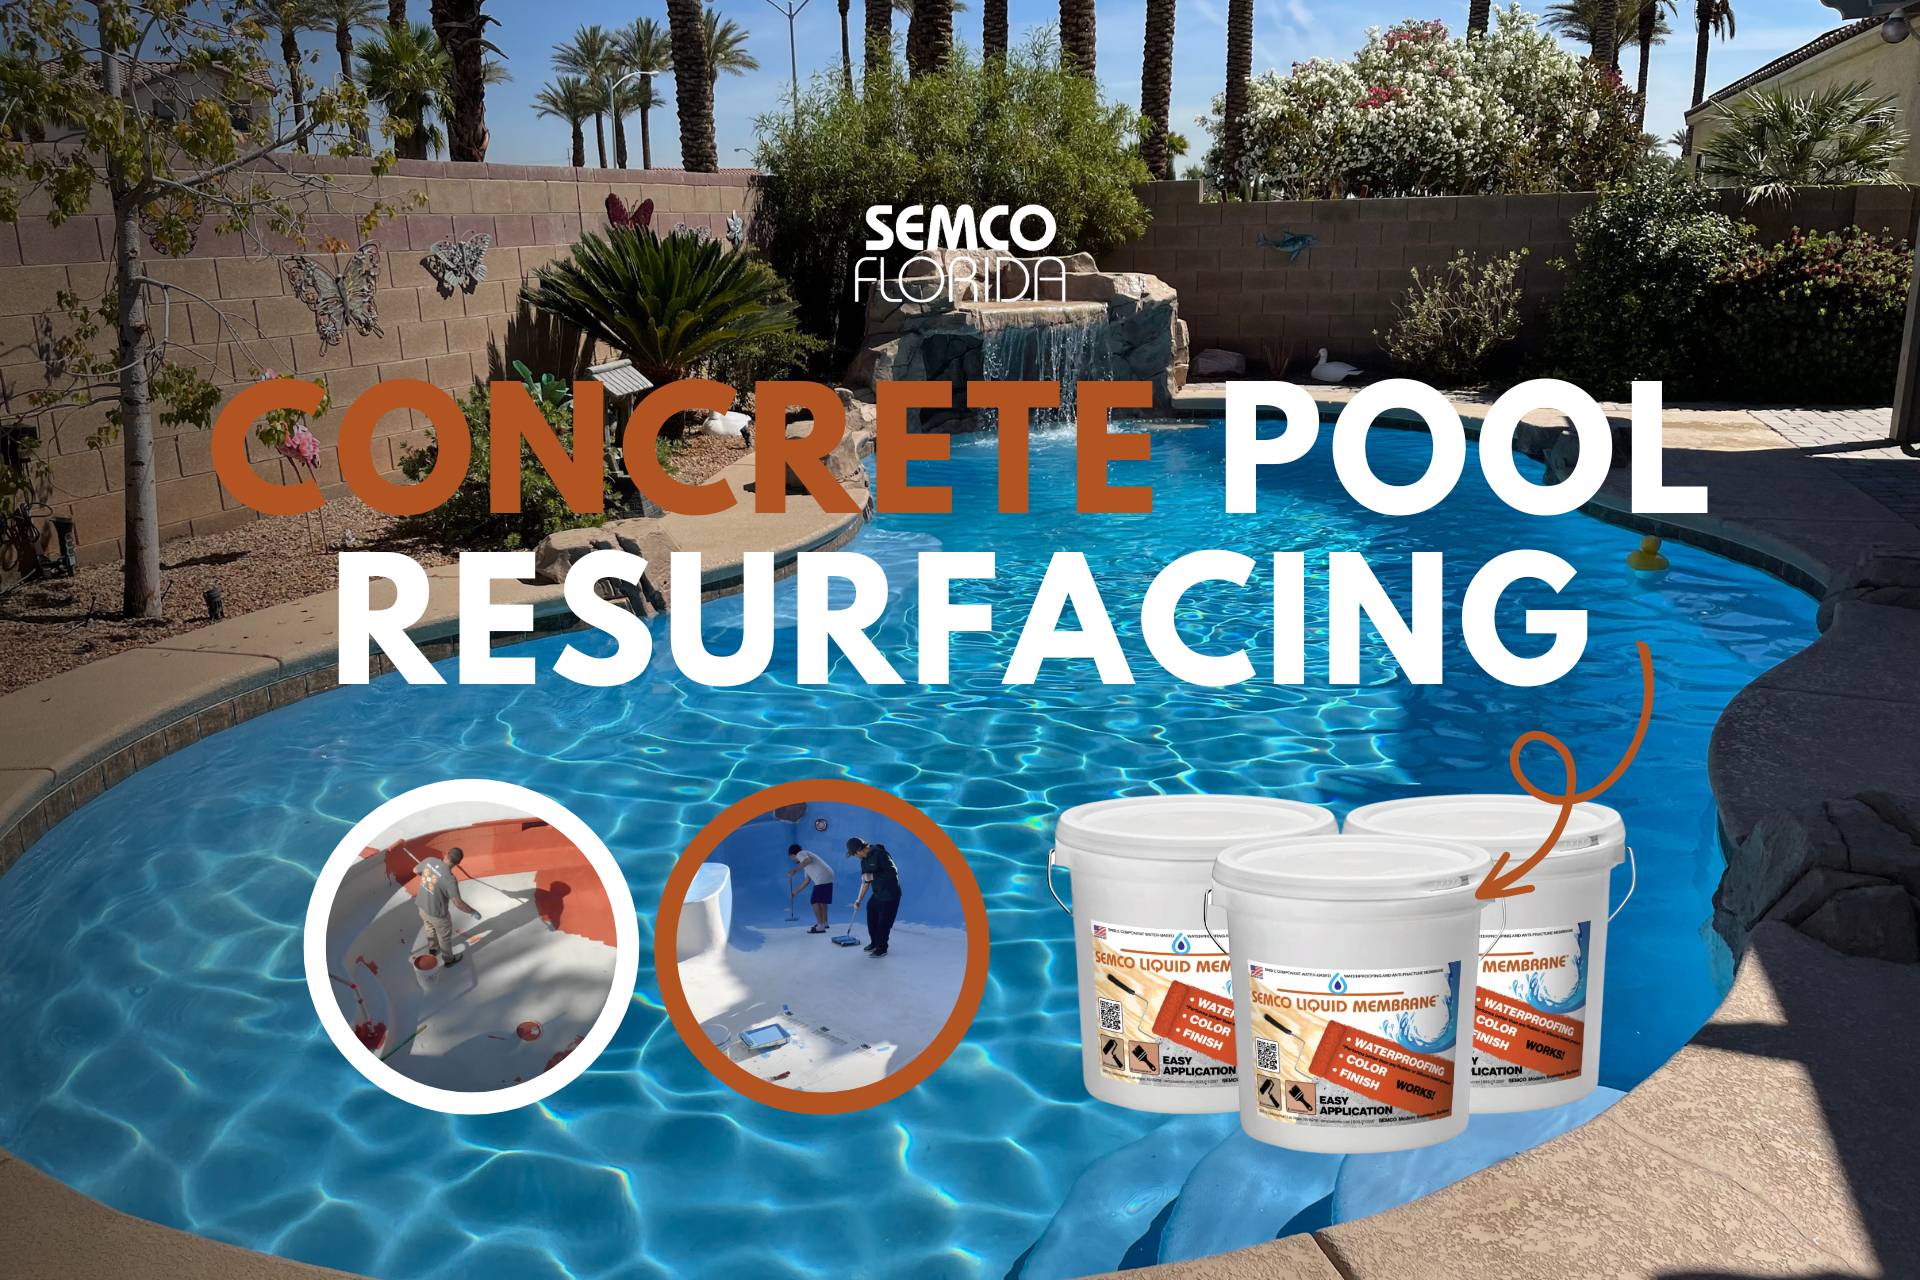 SEMCO Pool Resurfacing, Concrete Pool, Inground Pool Resurfacing Near Me